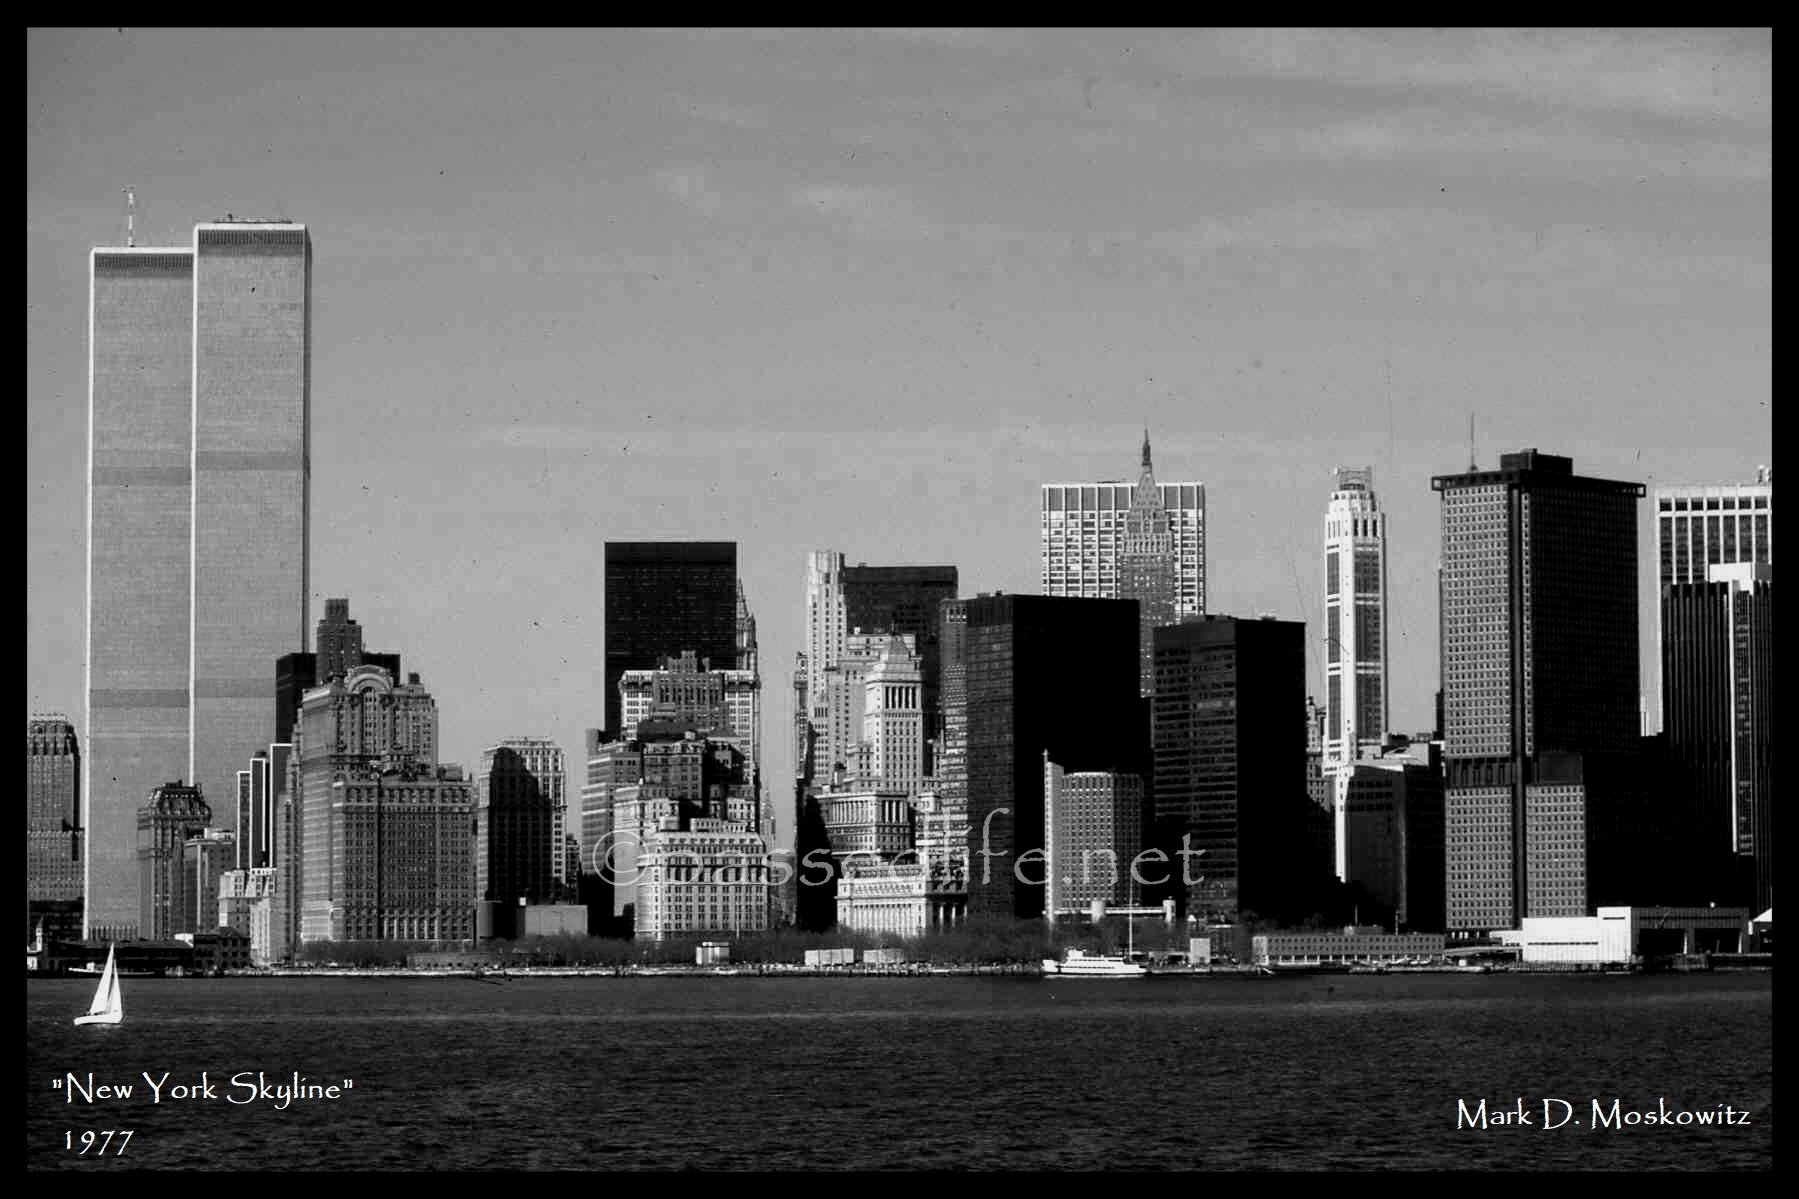 New York Skyline 1977 Titled-01 (1).jpeg